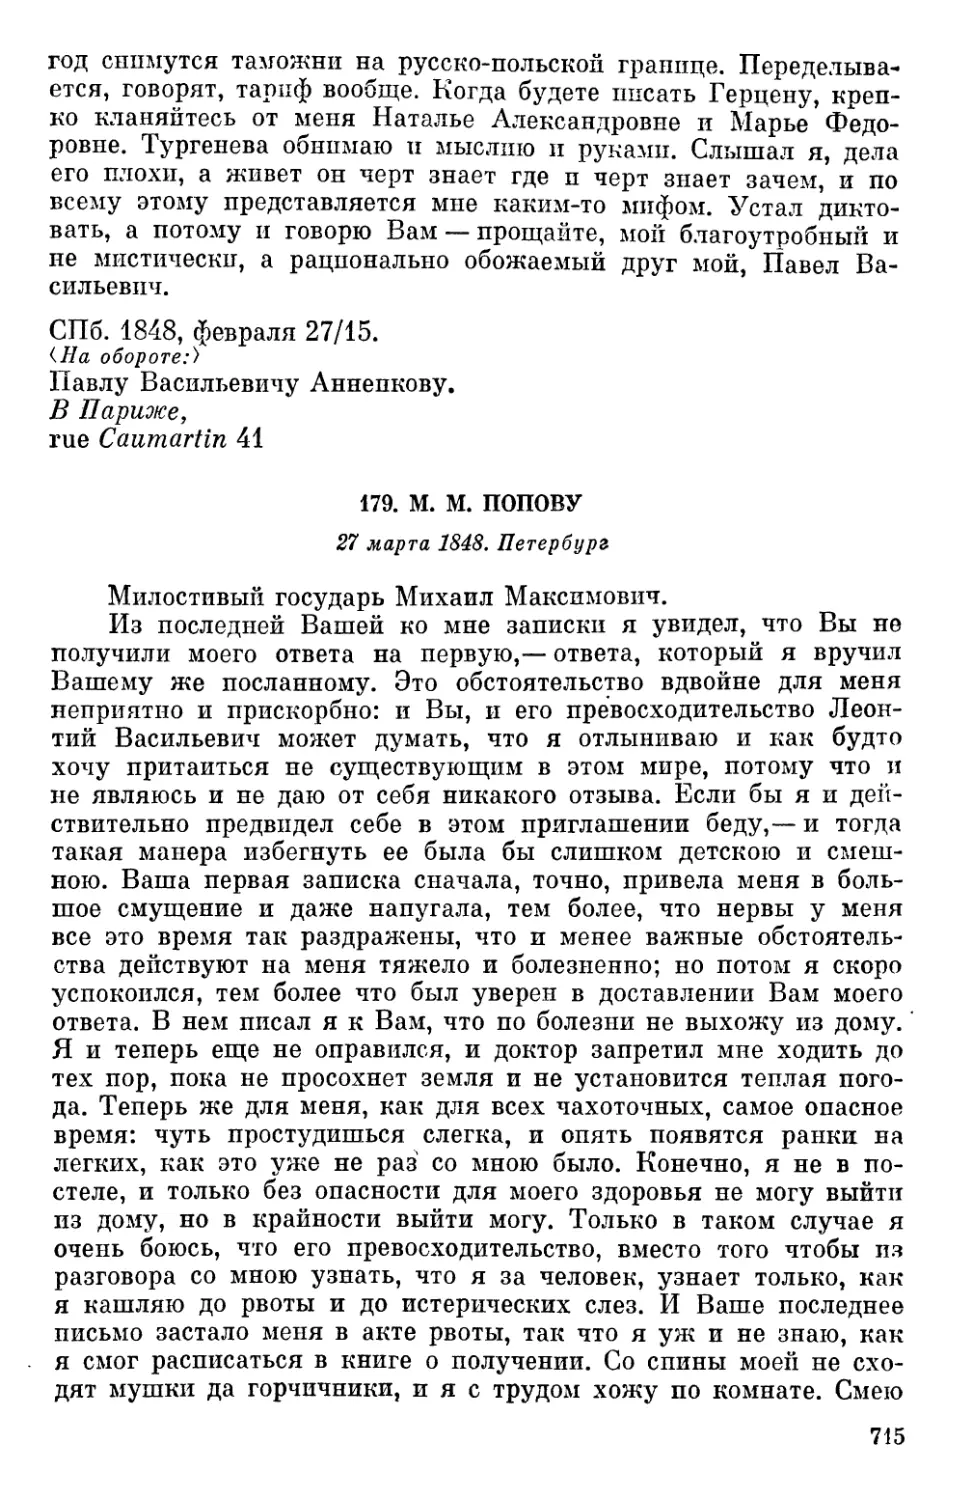 179. М. М. Попову. 27 марта 1818